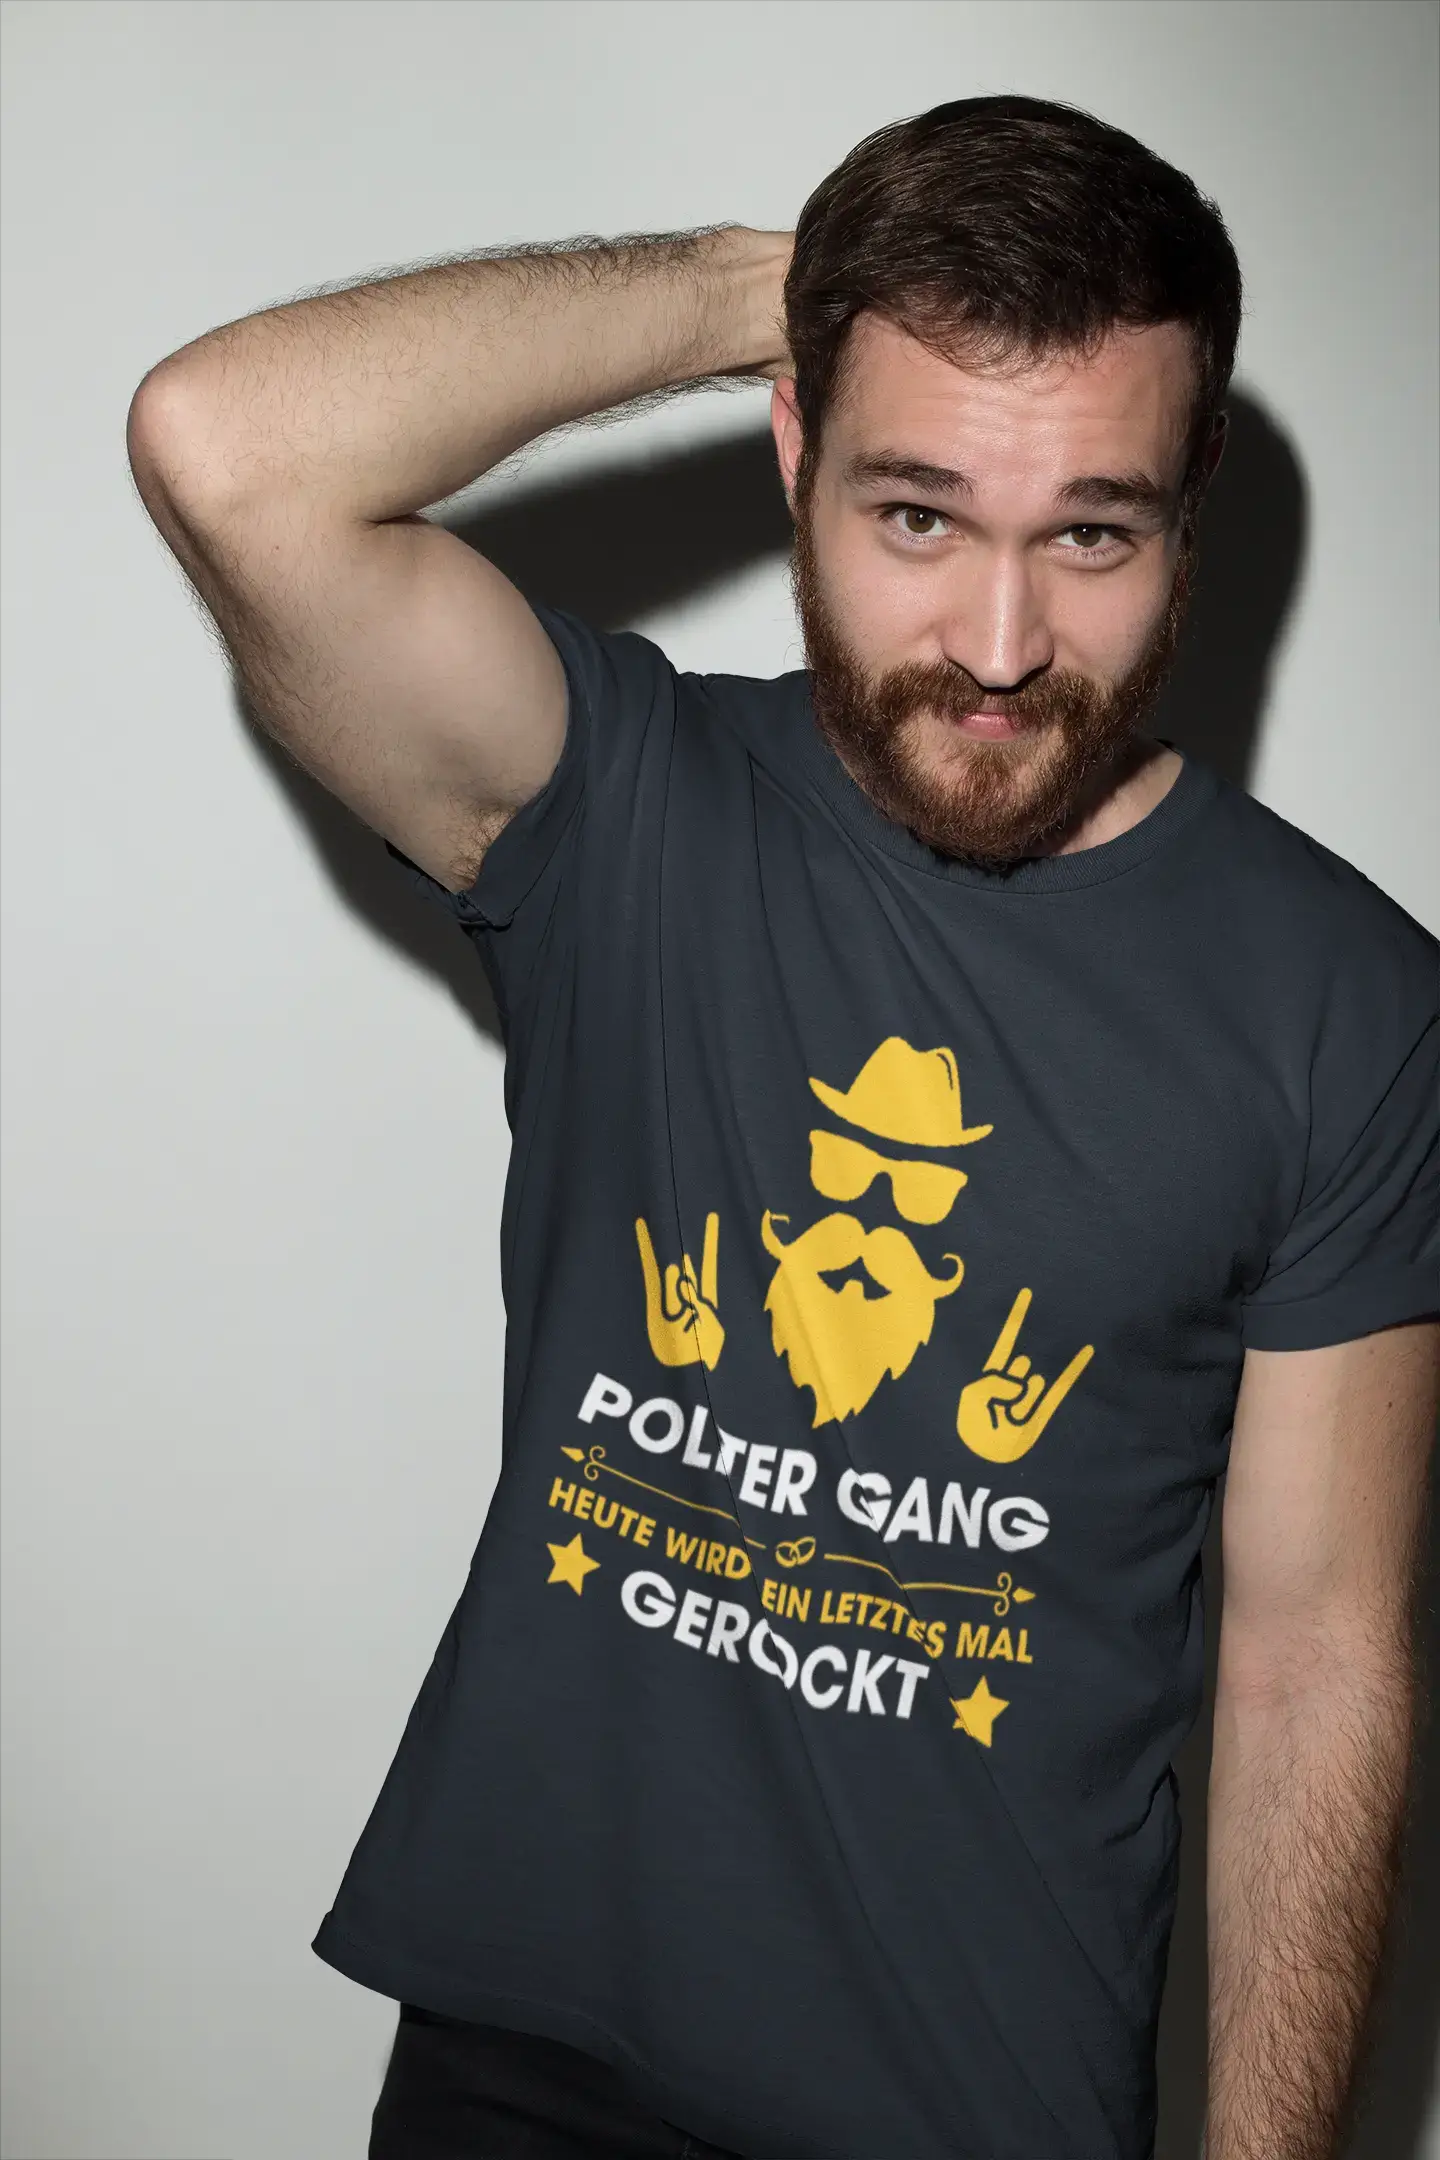 T-shirt <span>graphique</span> <span>homme</span> Polter Gang Gerockt idée <span>cadeau</span>